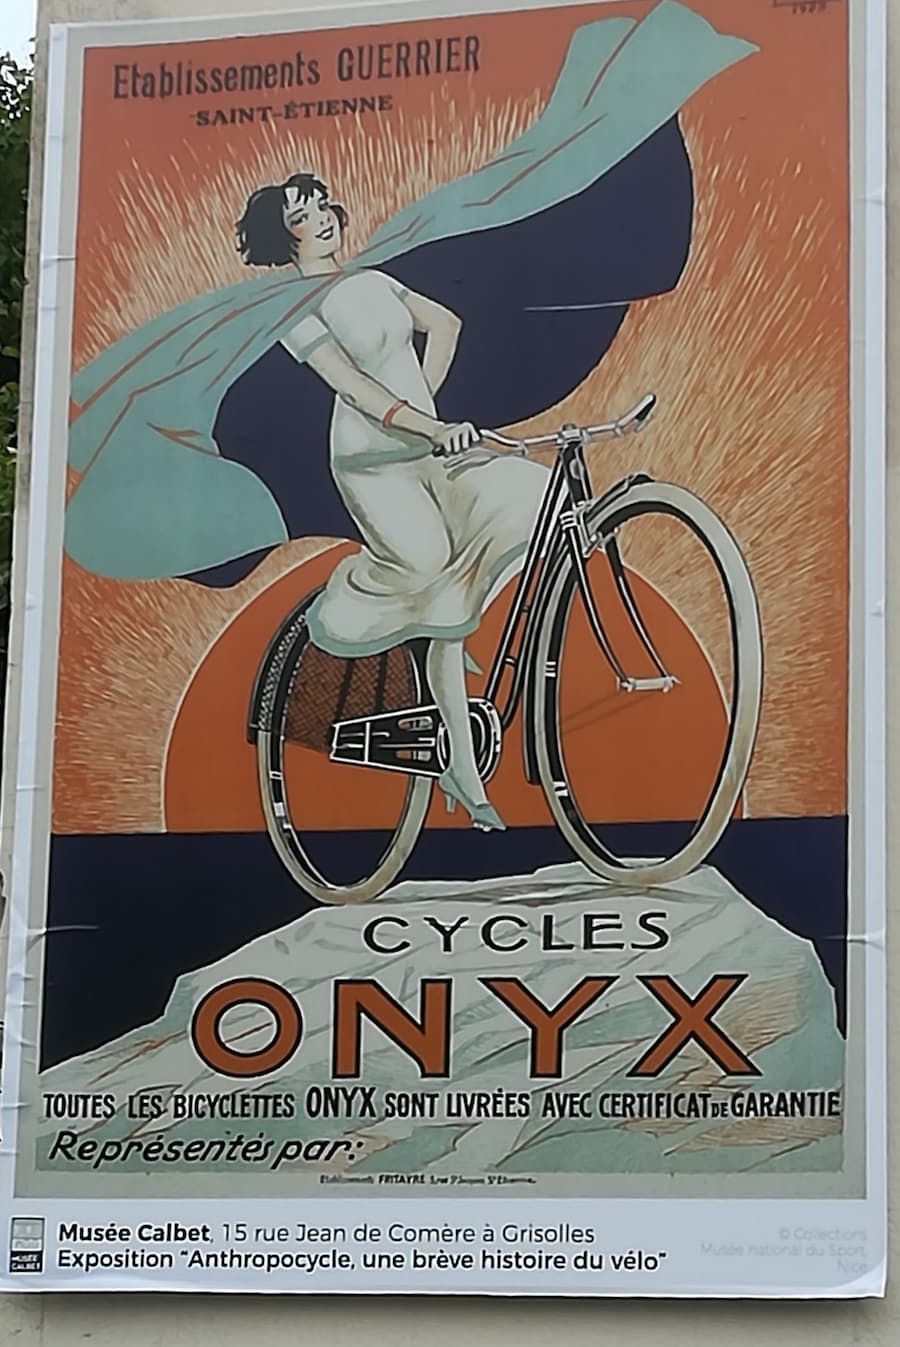 Affiche ancienne d'une femme sur un vélo